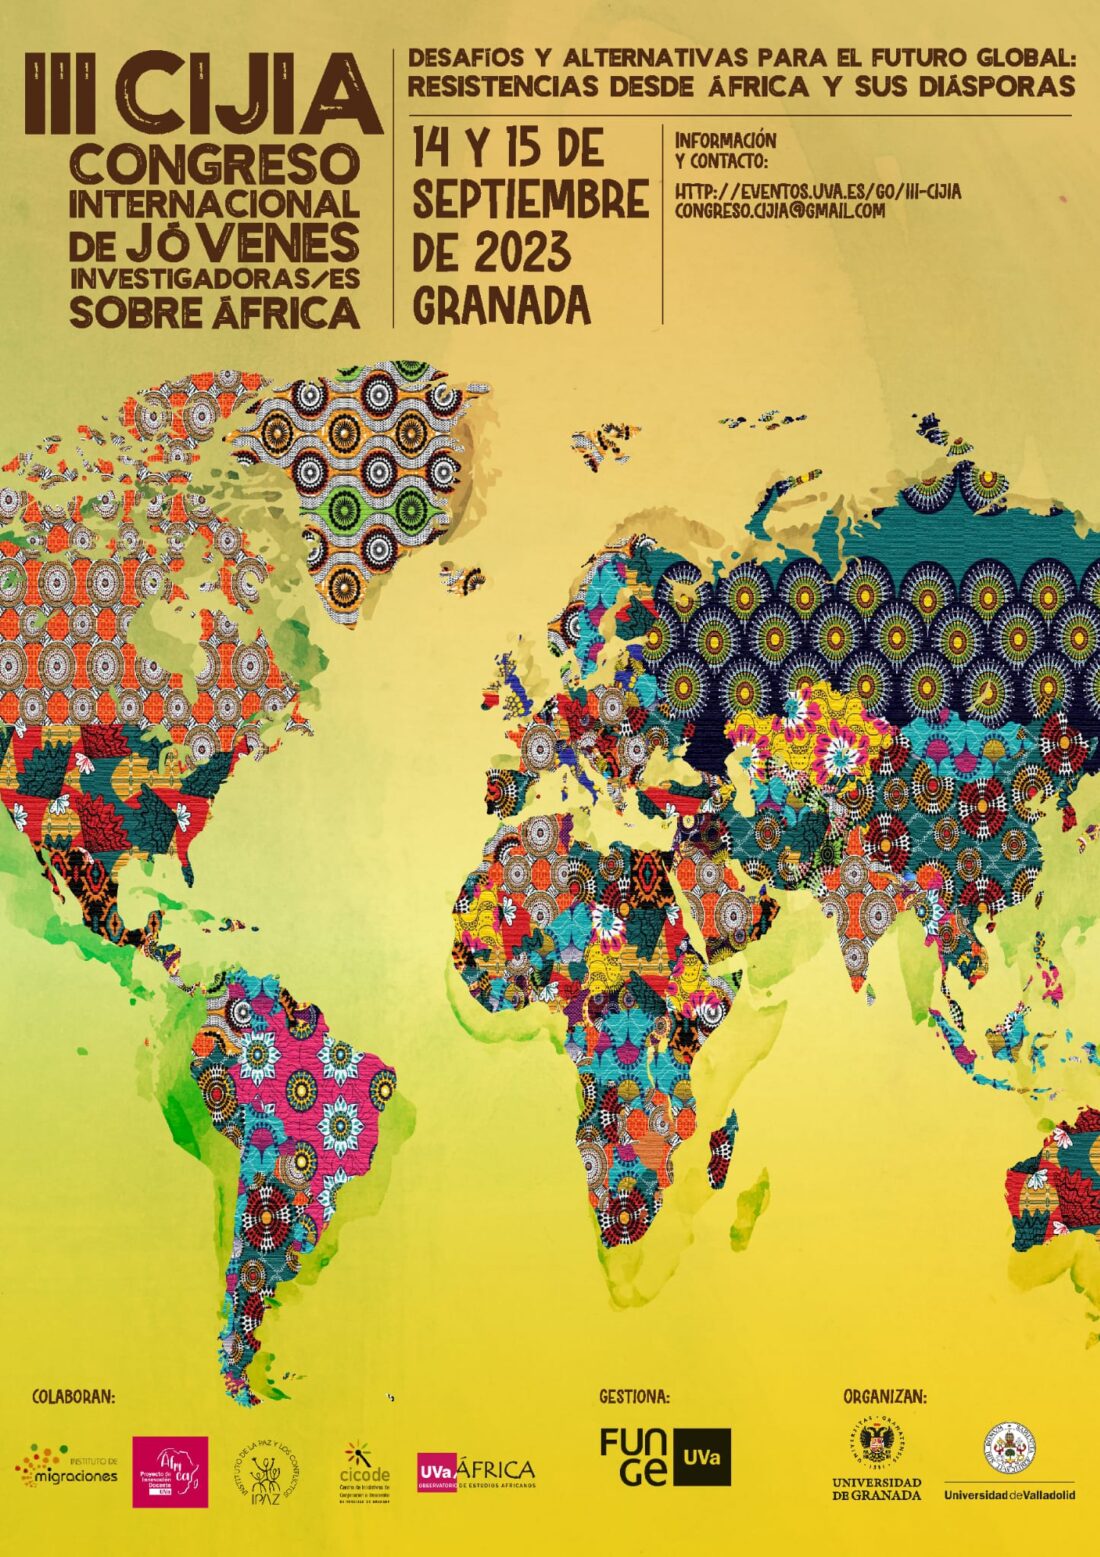 III Congreso Internacional de Jóvenes Investigadores sobre África en Granada